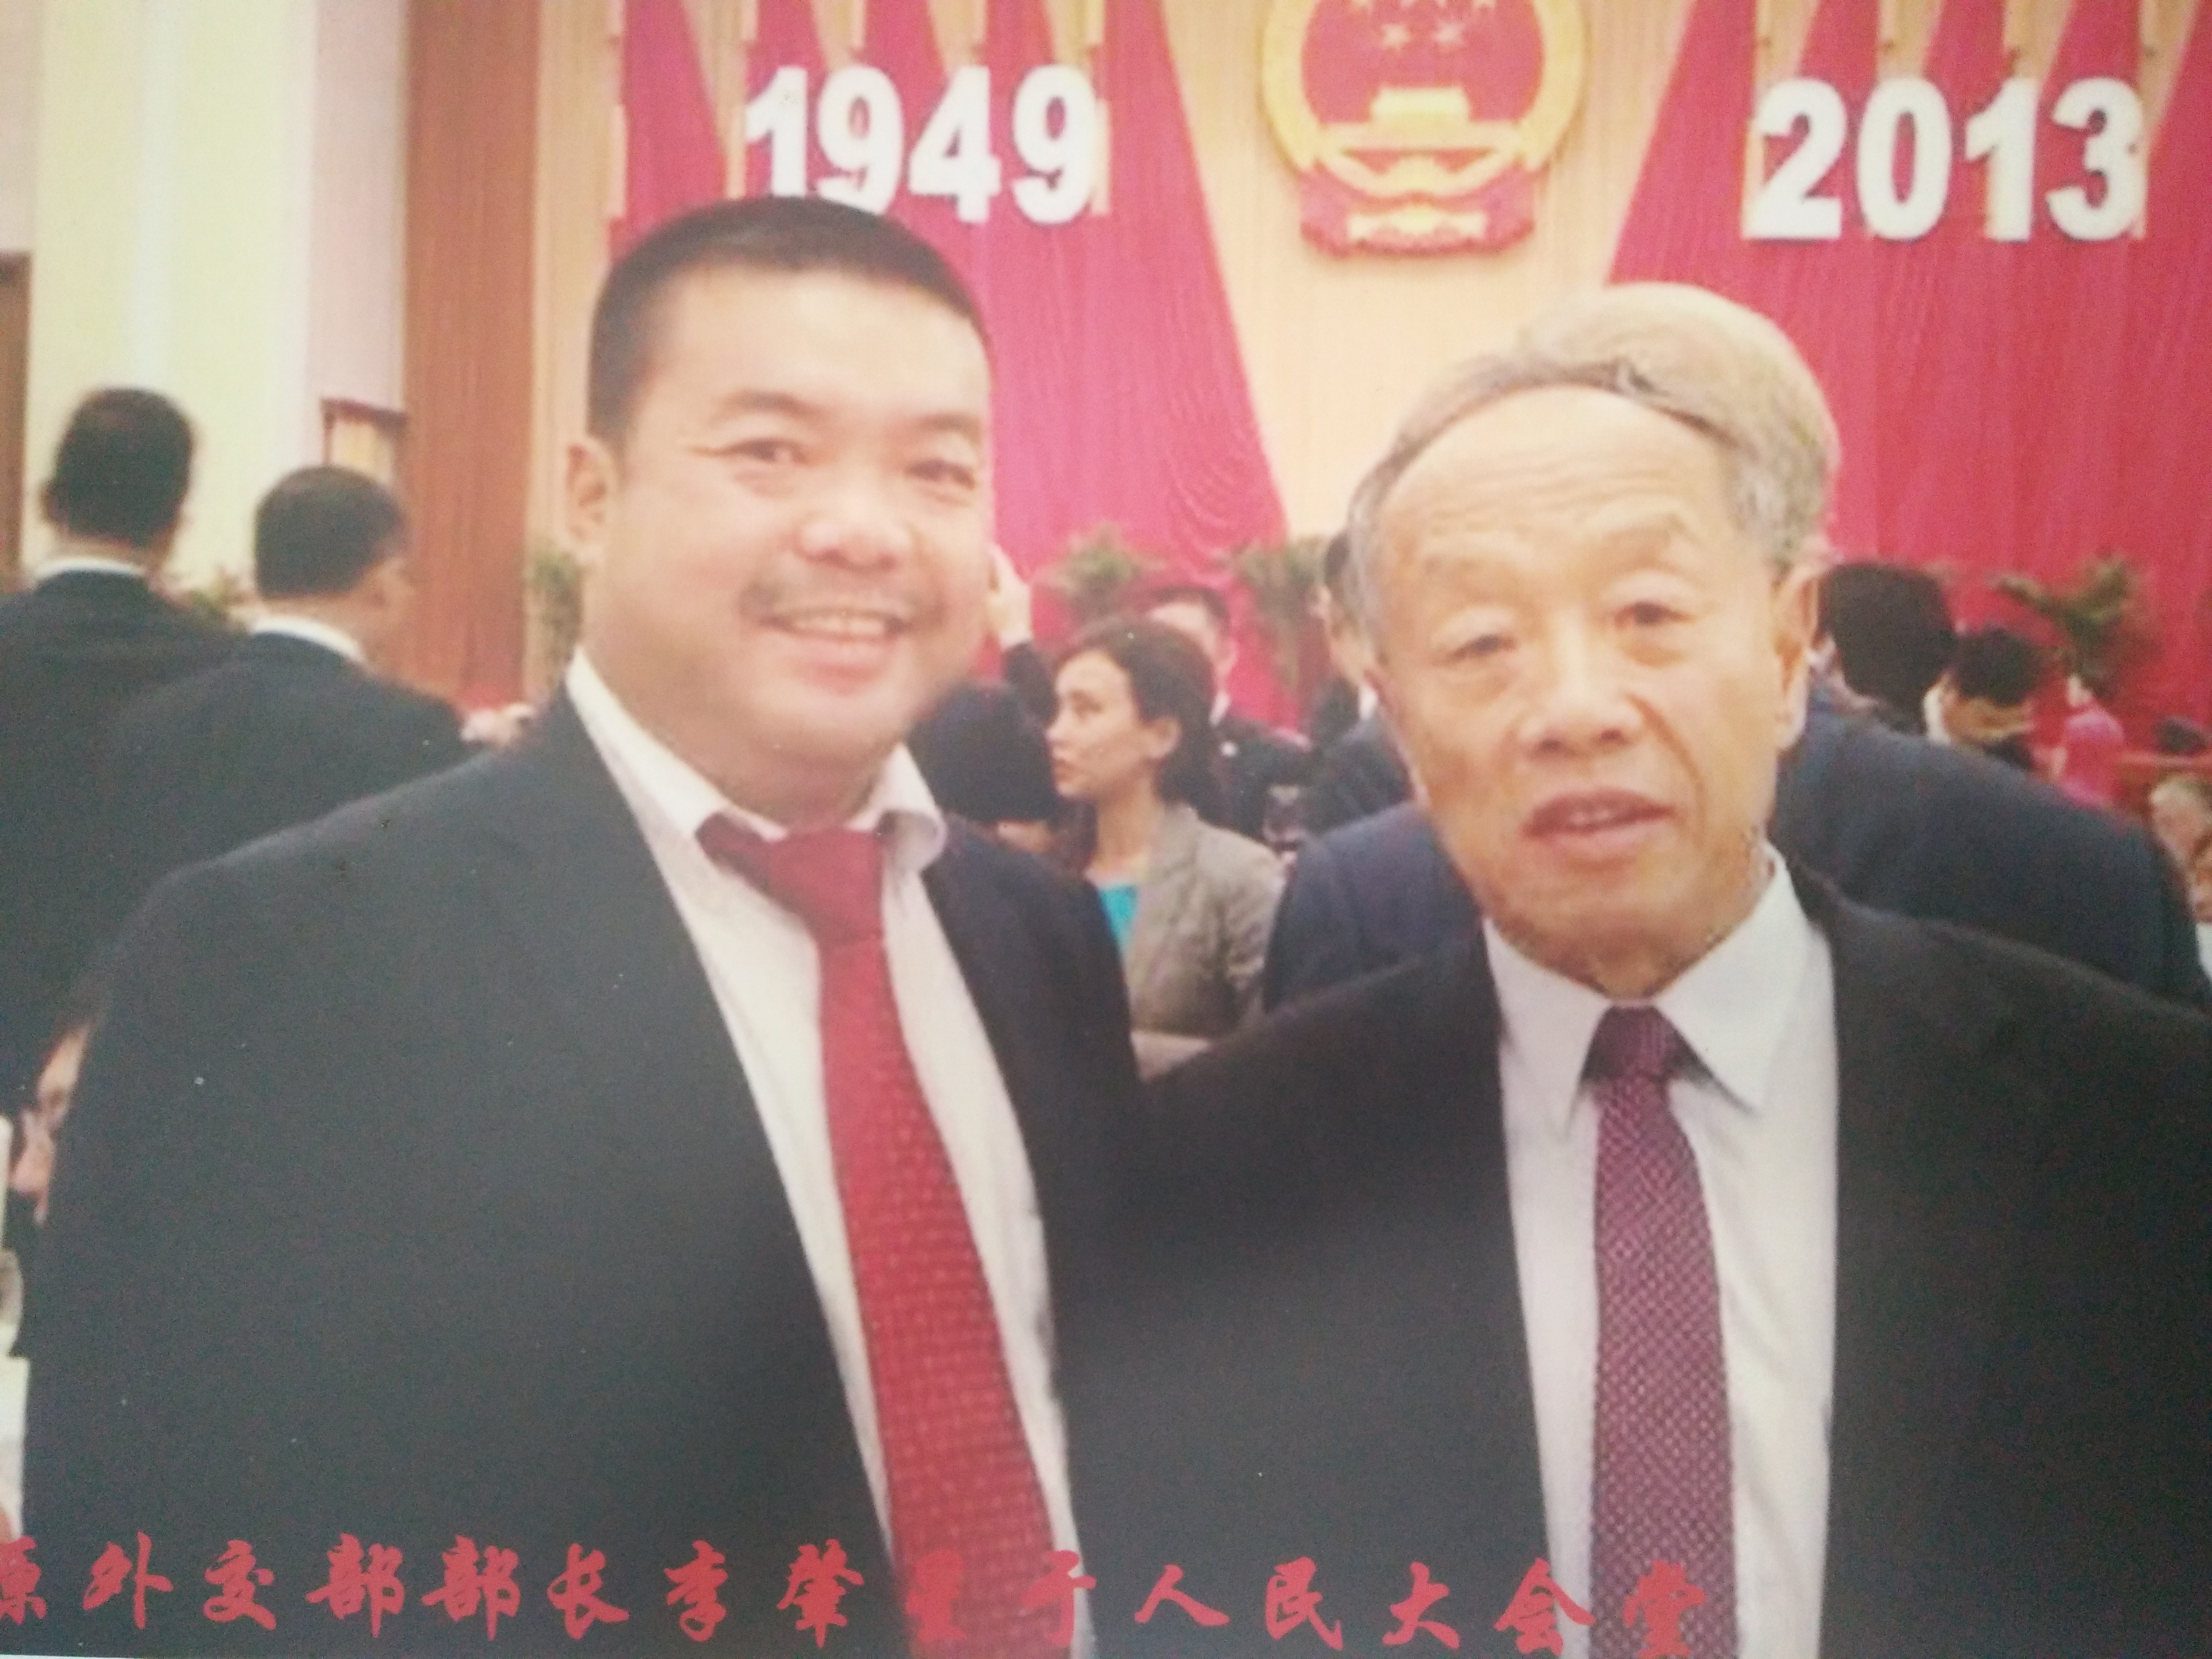 2013年王步钗在北京与原外交部长李肇星